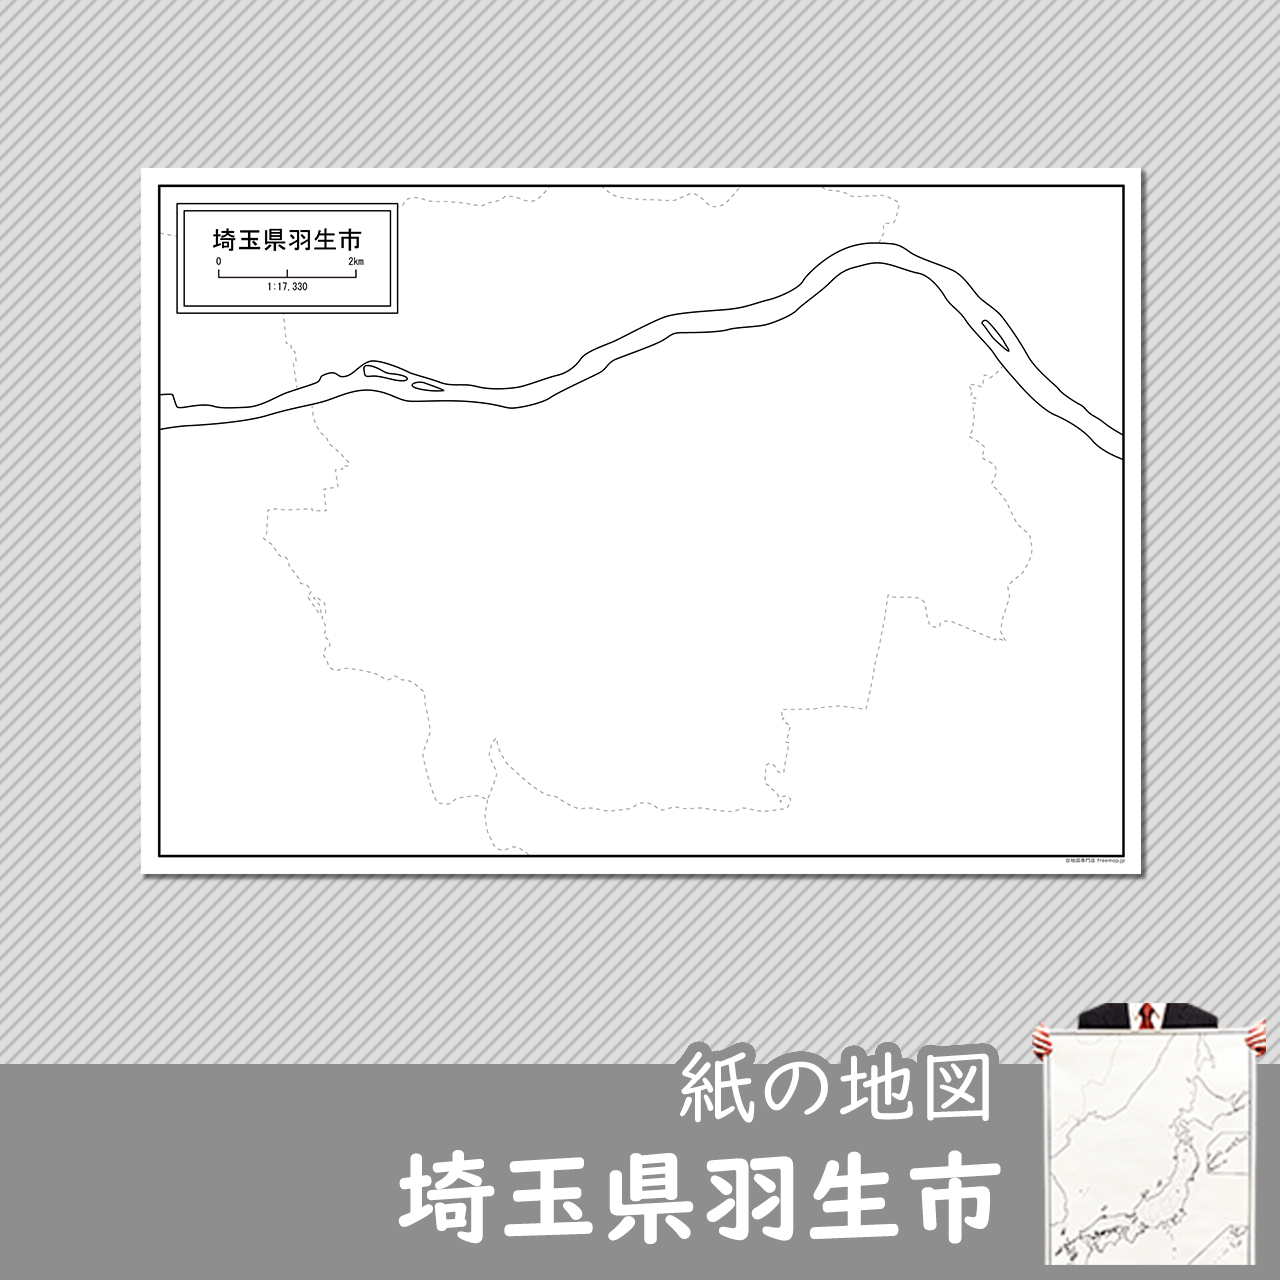 羽生市の紙の白地図のサムネイル